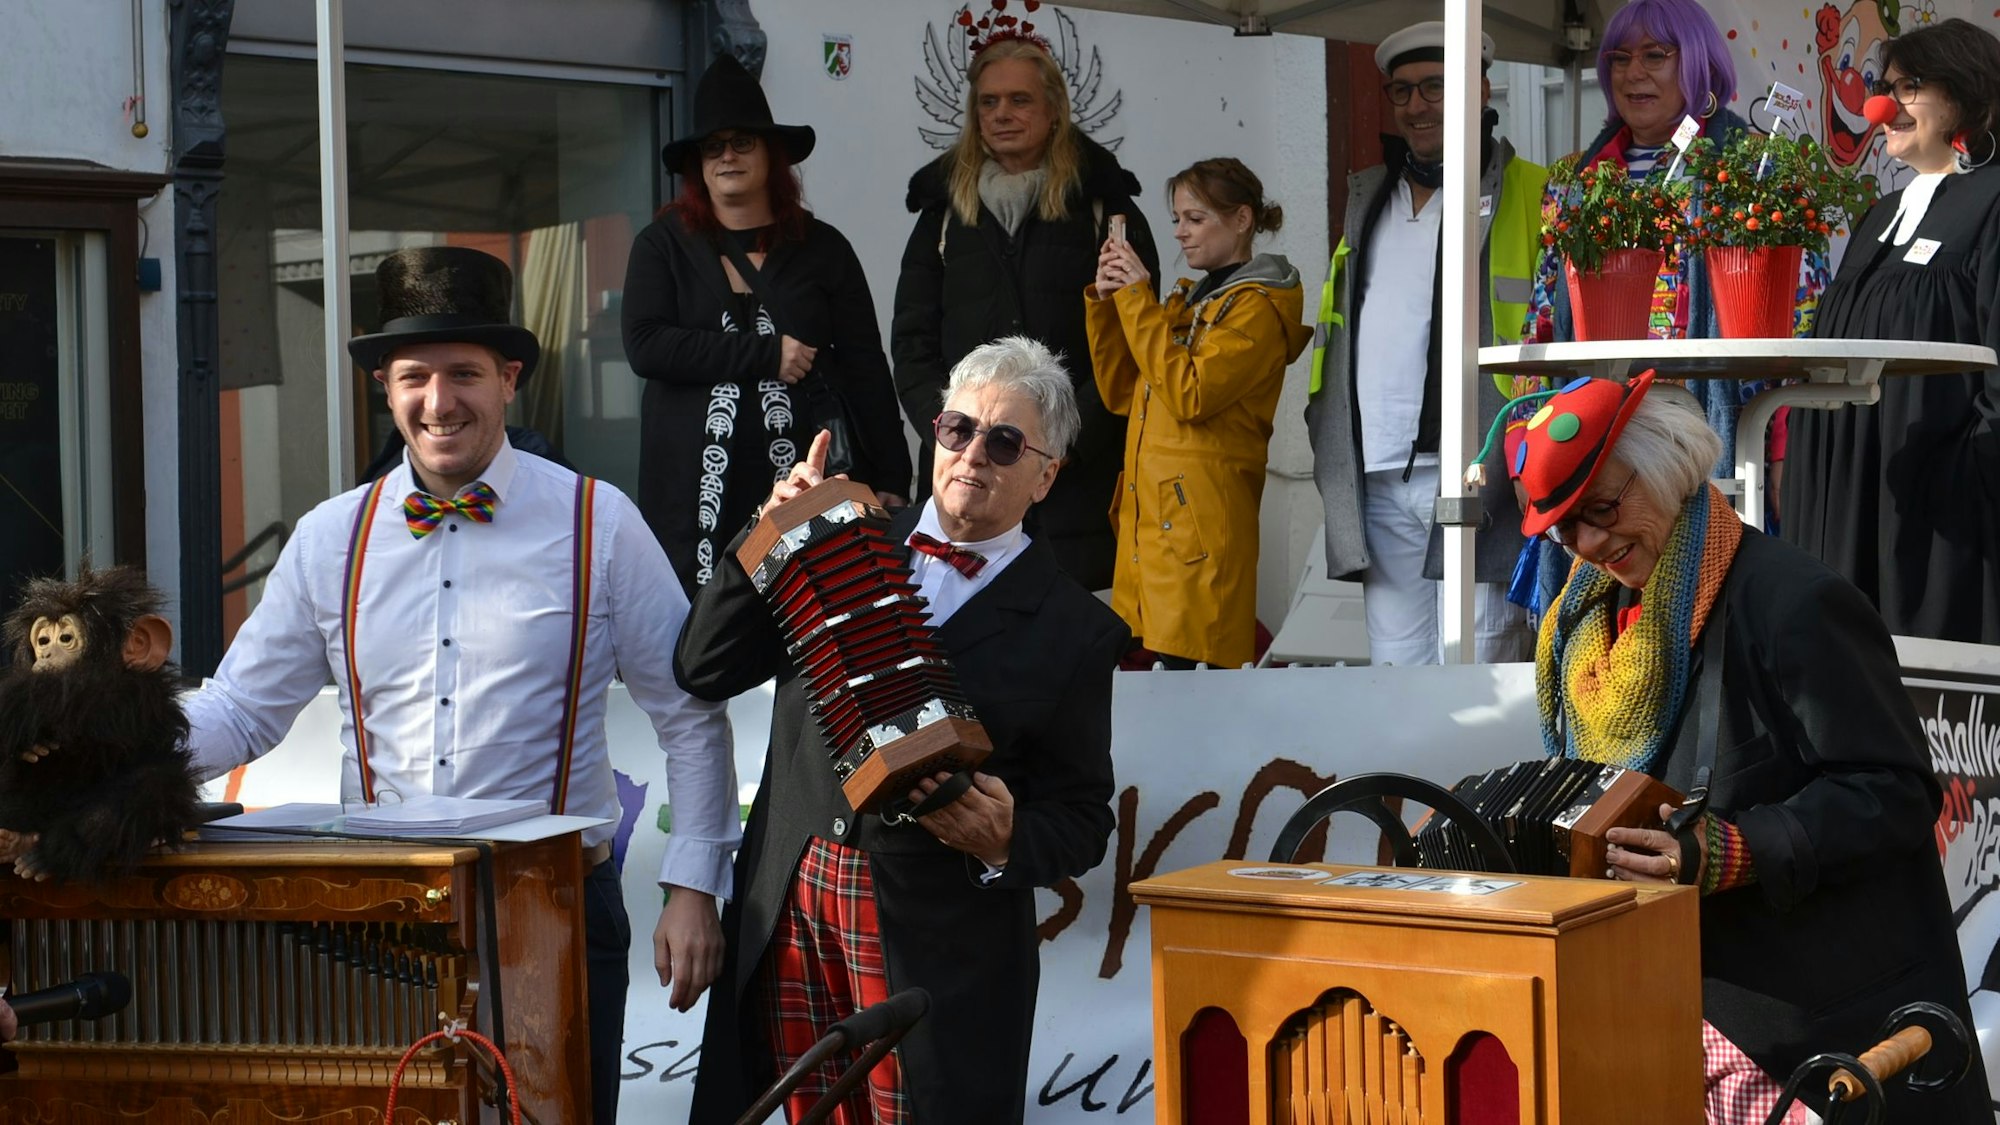 Landrat Markus Ramers (l.) trägt ein weißes Hemd und einen Zylinder, als er eine Drehorgel bedient. Zwei karnevalistisch gekleidete Ziehharmonikaspielerinnen stehen neben ihm, auf einer Bühne sind weitere verkleidete Personen zu sehen.